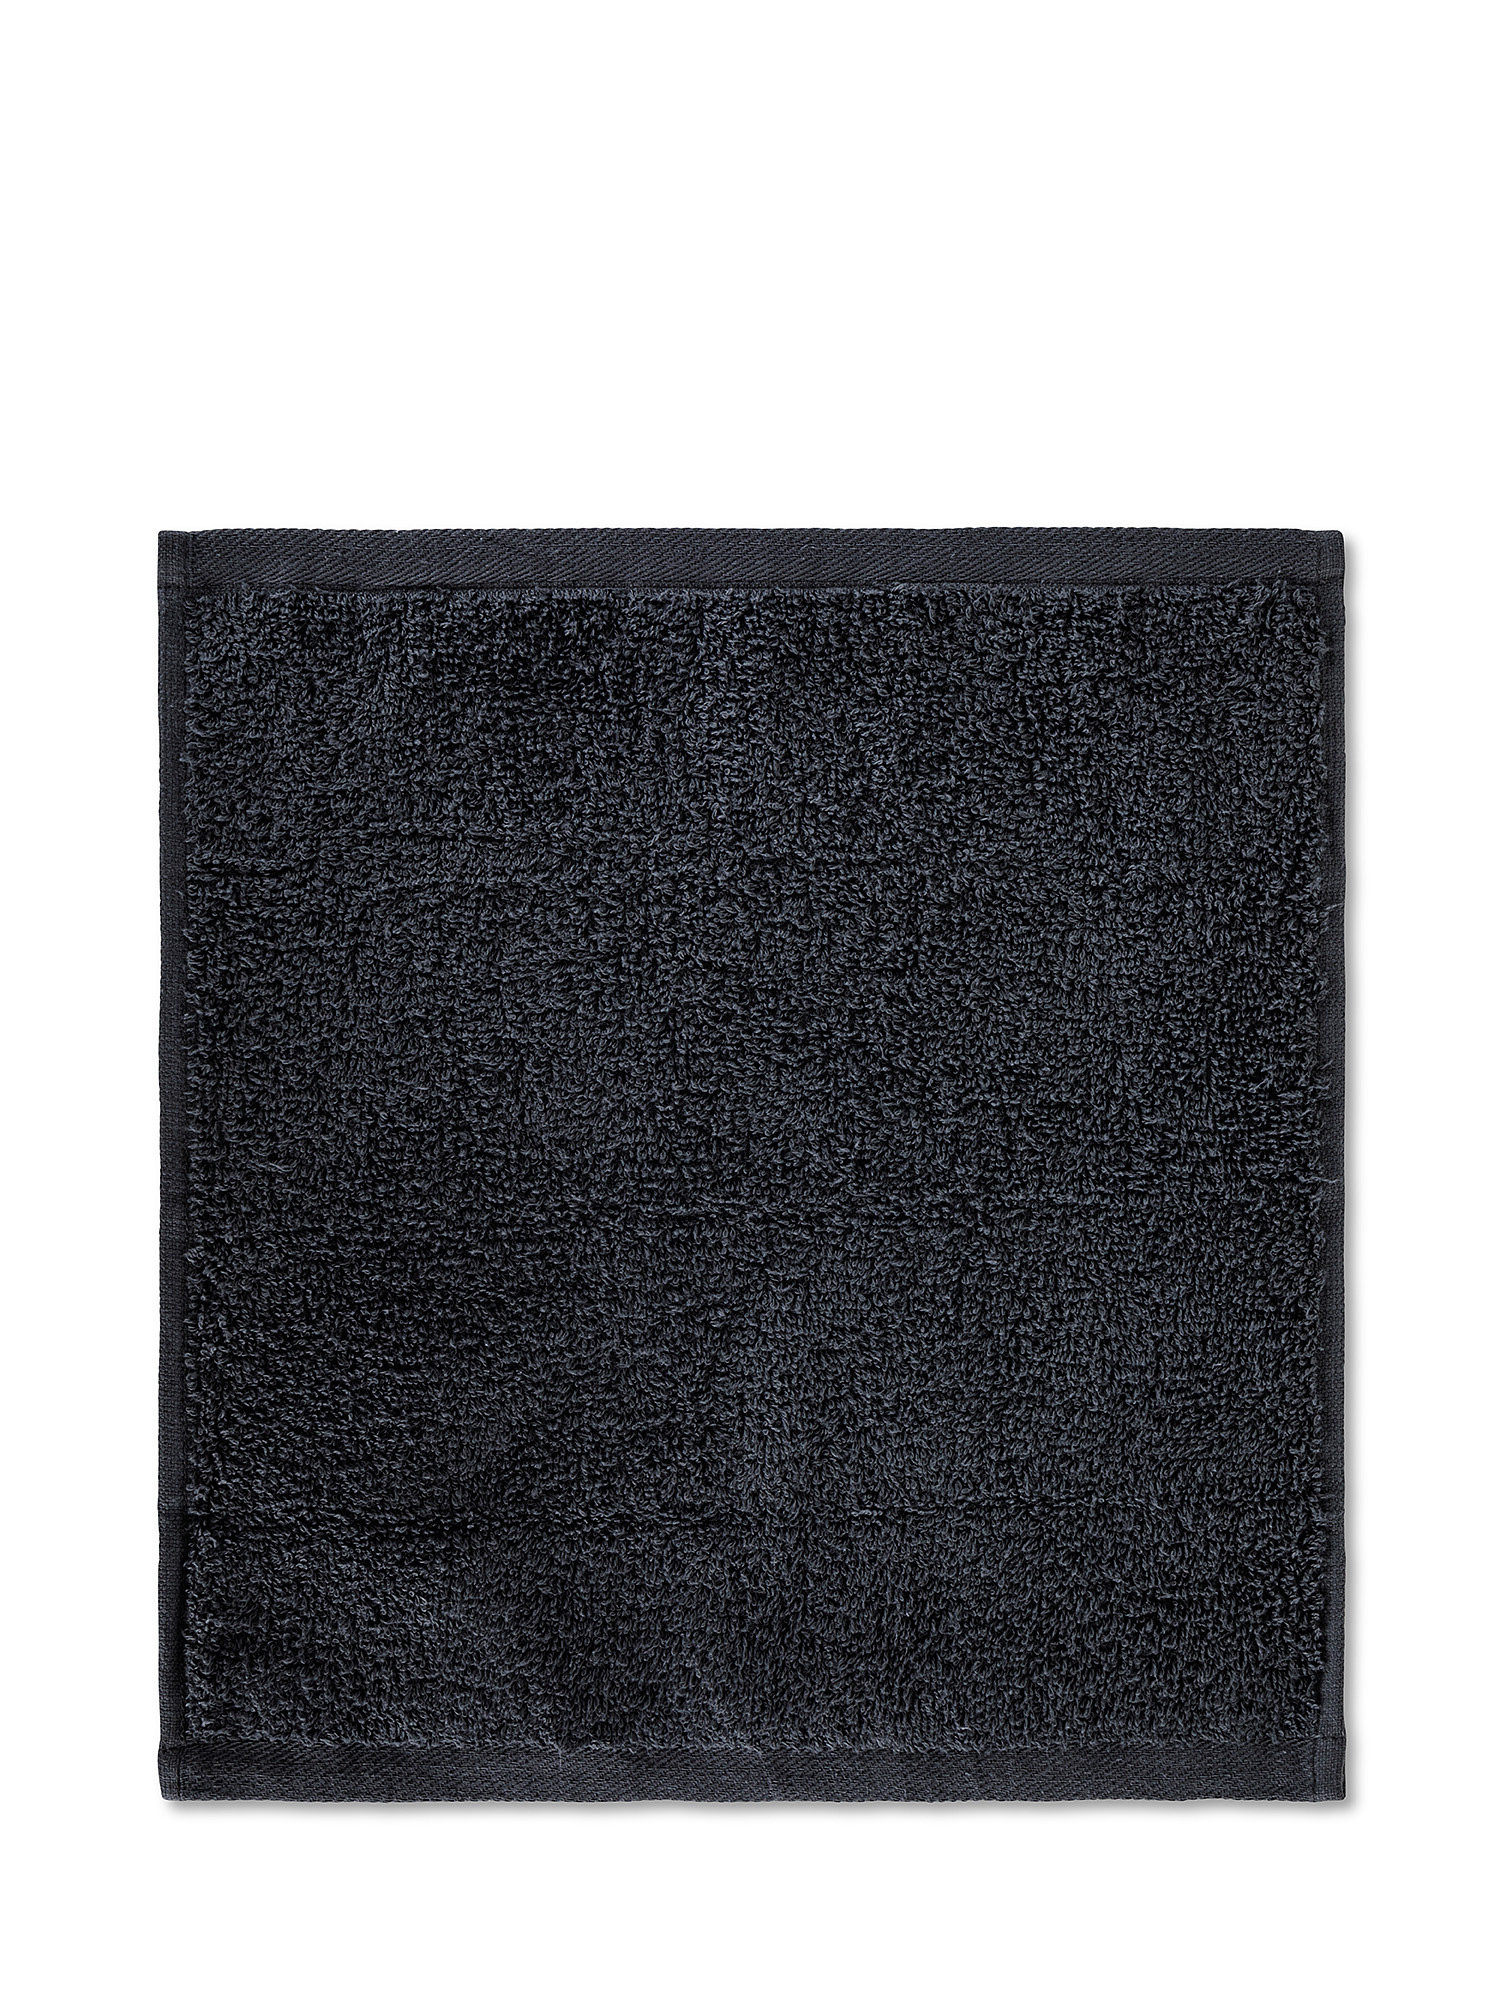 Basket 4 plain colored cotton washcloths, Black, large image number 2